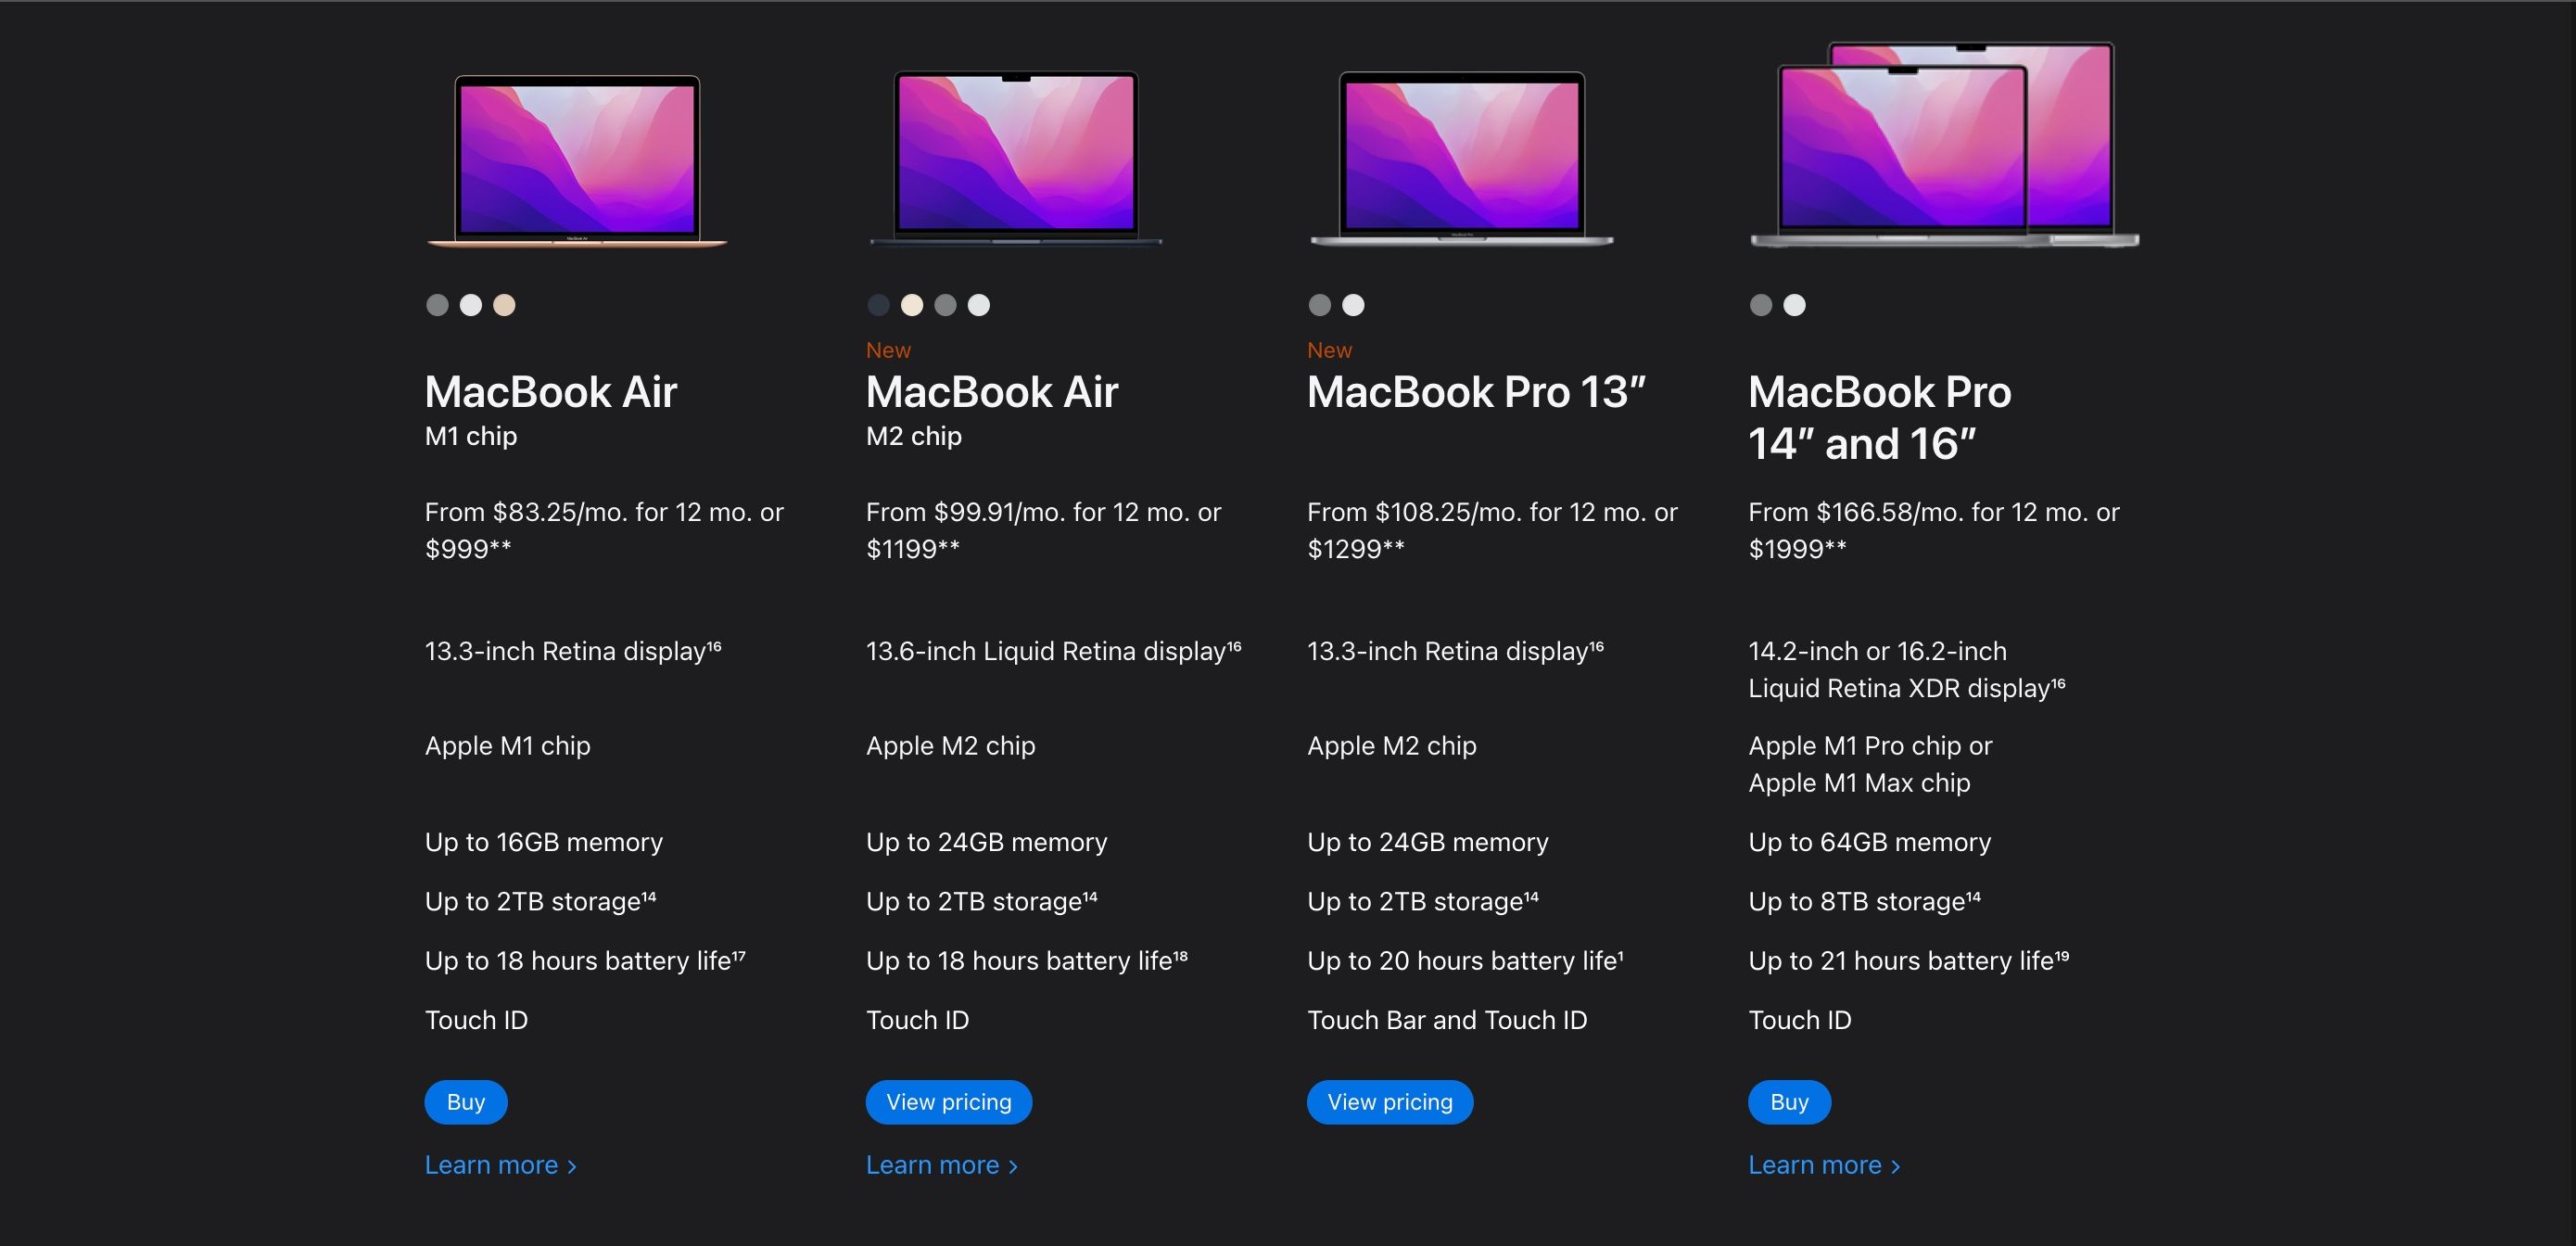 Price comparison between different MacBook models